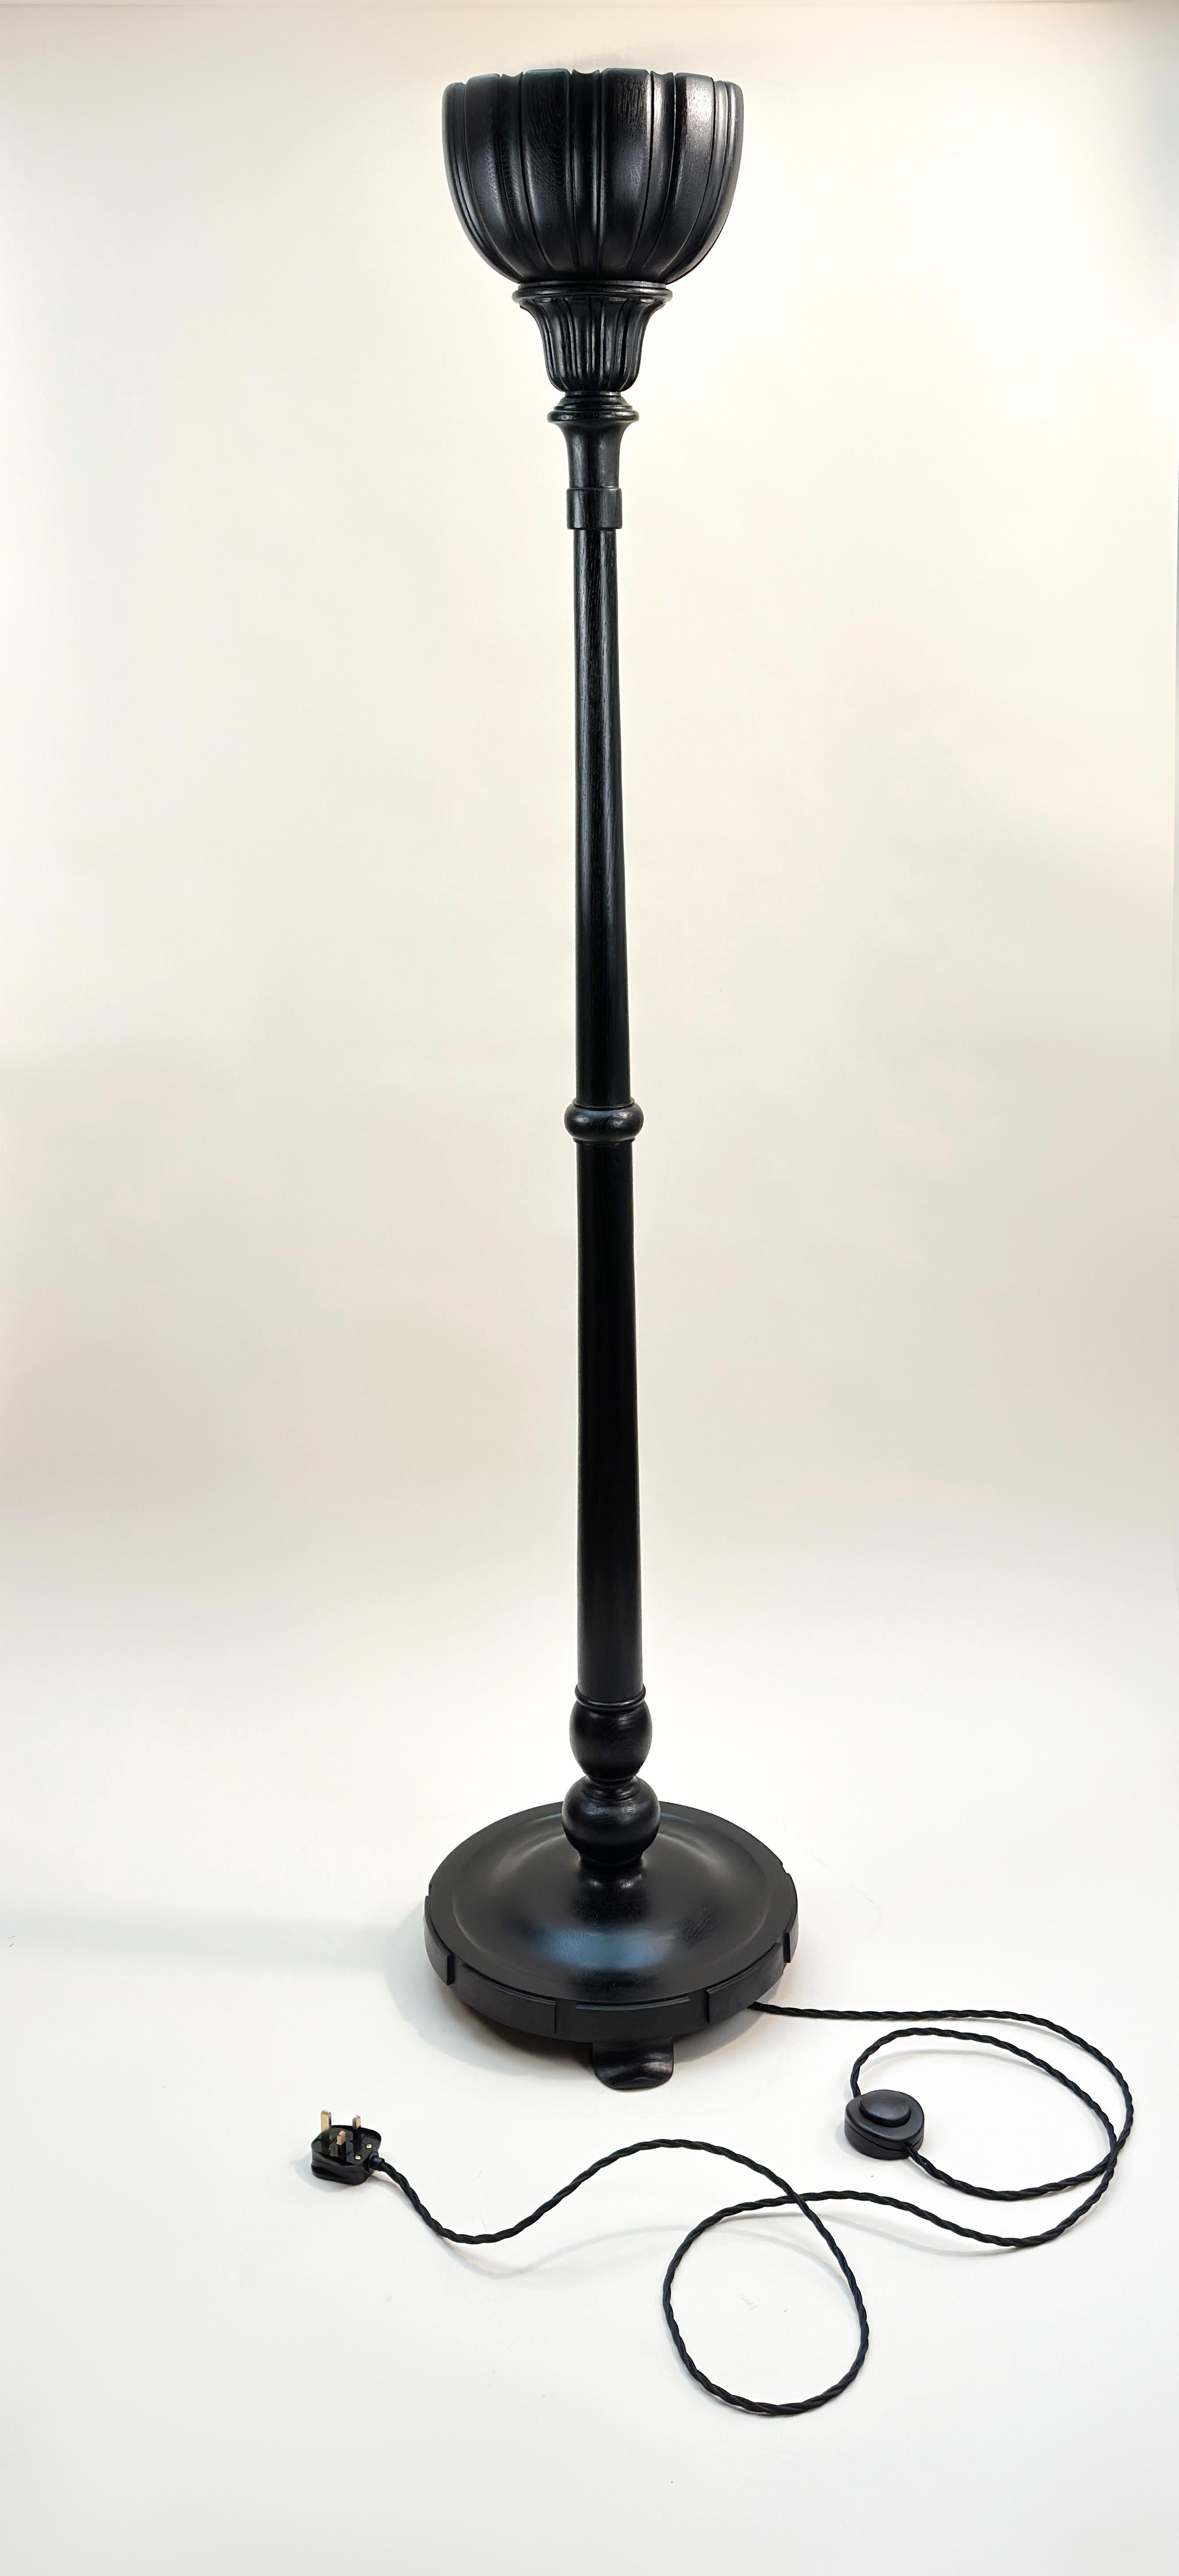 Lampadaire victorien 'Torchere Style' (style torchère)

Ce lampadaire victorien, datant du début du XXe siècle, a été méticuleusement fabriqué en chêne anglais. Conçue à l'origine pour être utilisée à l'intérieur d'une banque britannique, elle se